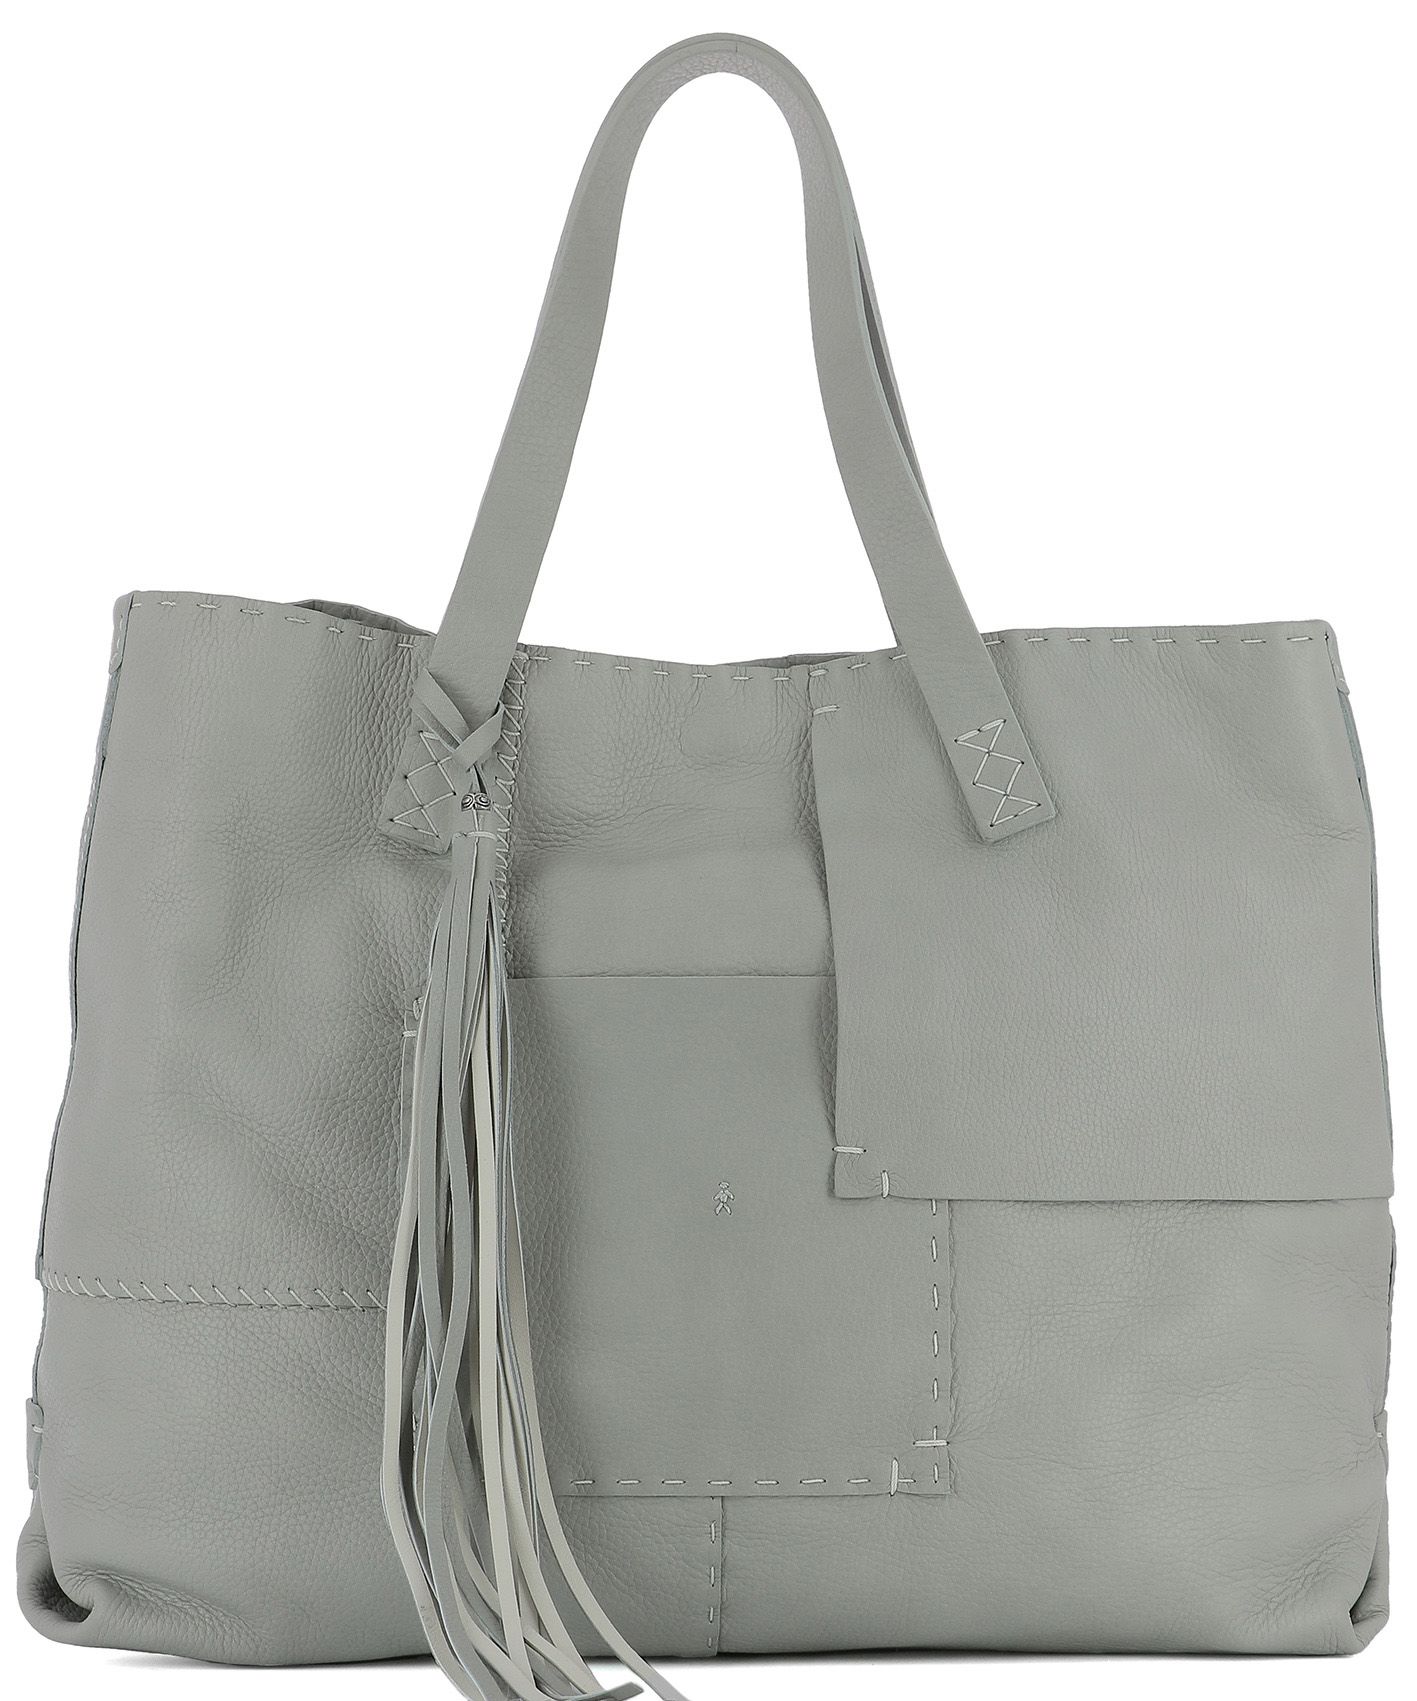 henry beguelin - Grey Leather Shoulder Bag - Grey, Women&#39;s Shoulder Bags | Italist